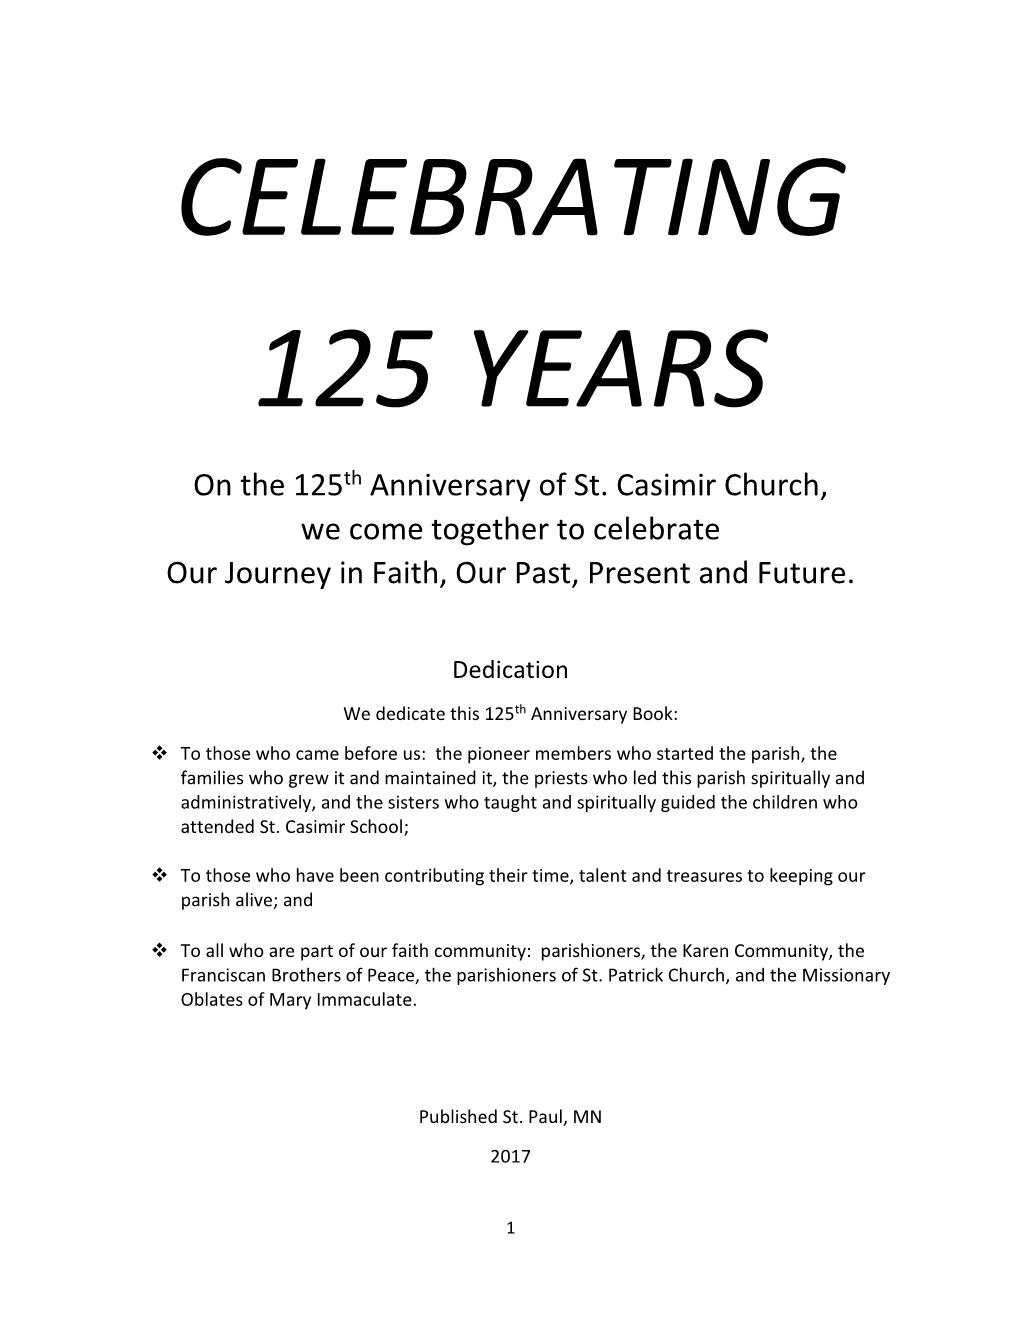 Celebrating 125 Years